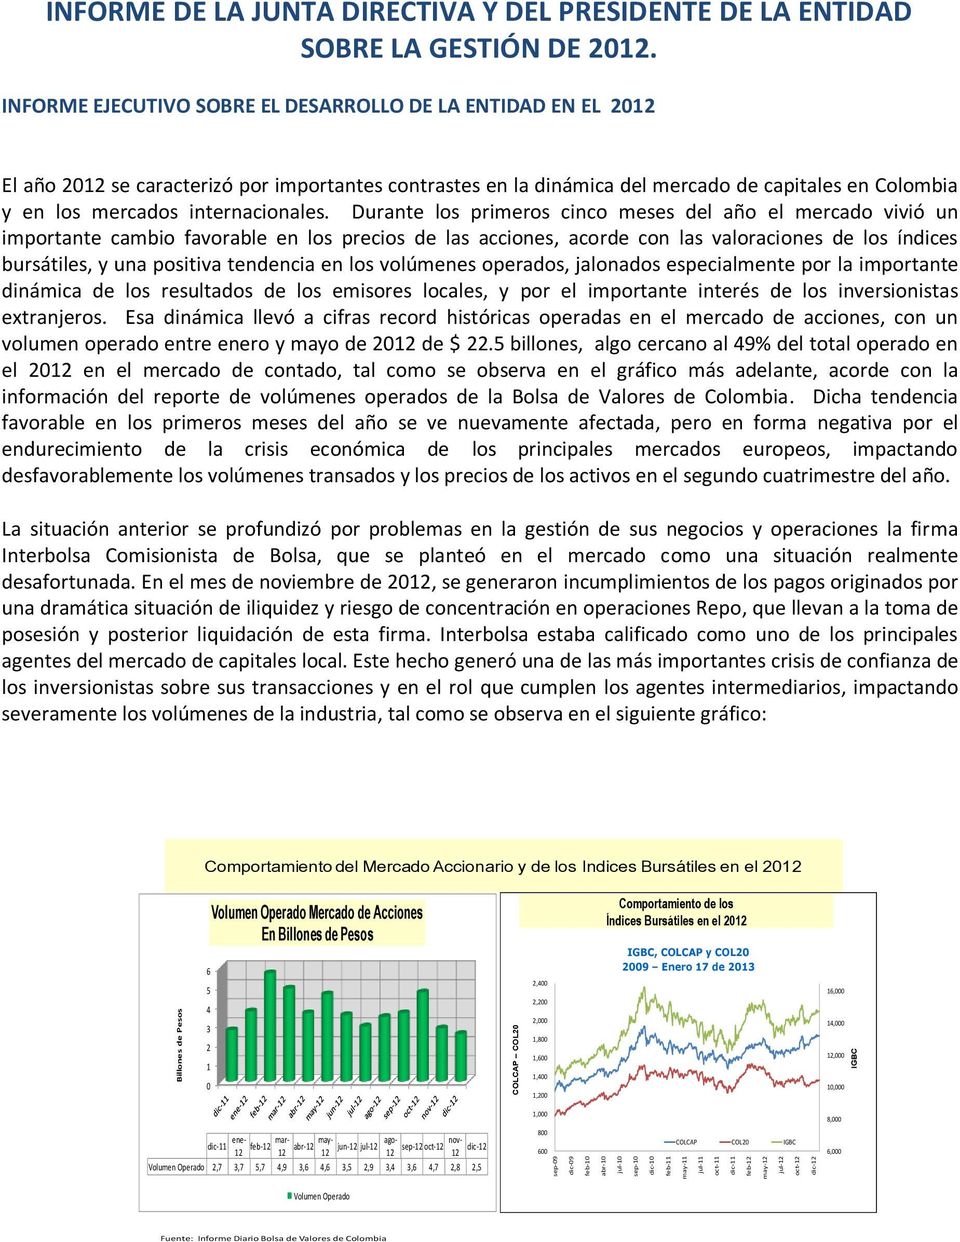 INFORME EJECUTIVO SOBRE EL DESARROLLO DE LA ENTIDAD EN EL 2012 El año 2012 se caracterizó por importantes contrastes en la dinámica del mercado de capitales en Colombia y en los mercados